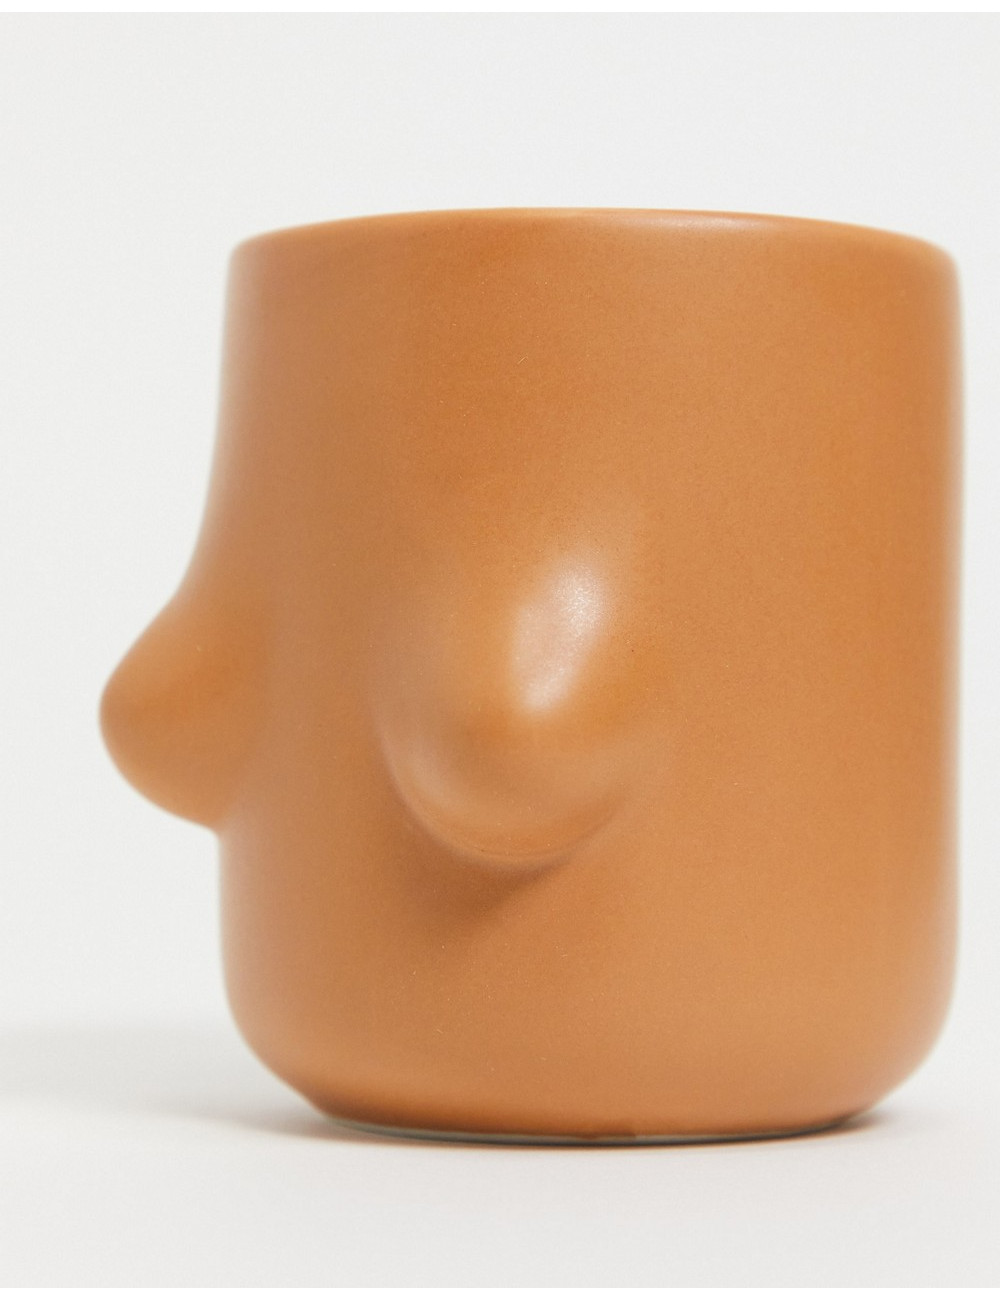 Monki Titti body mug in brown